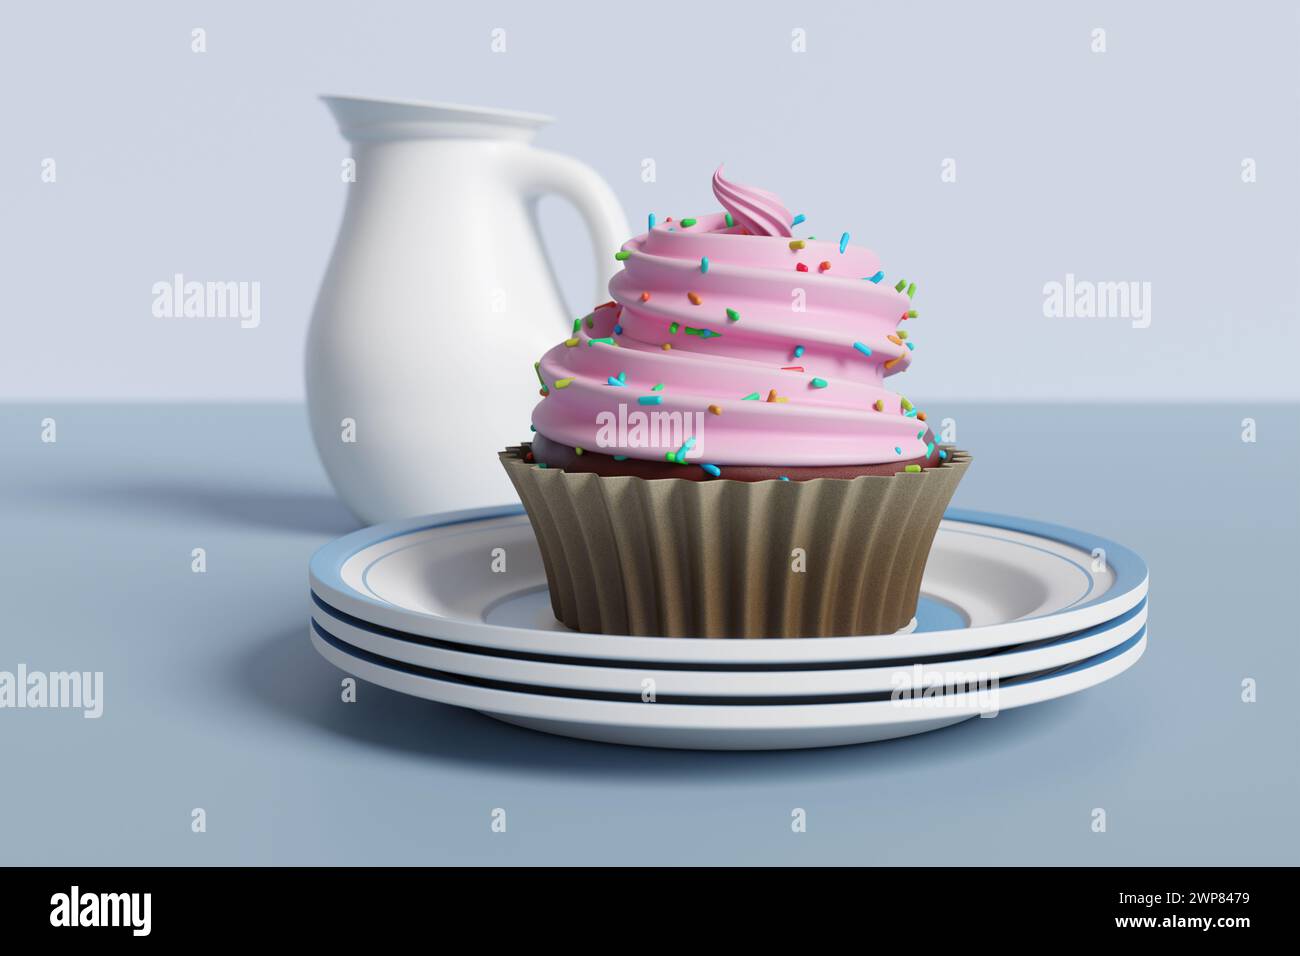 Rosafarbener Cupcake auf einem Stapel weißer Keramikplatten mit einem weißen Milchglas auf einem blassblauen Hintergrund. Verwöhnende Desserts und süße Speisen und Fettleibigkeit Stockfoto